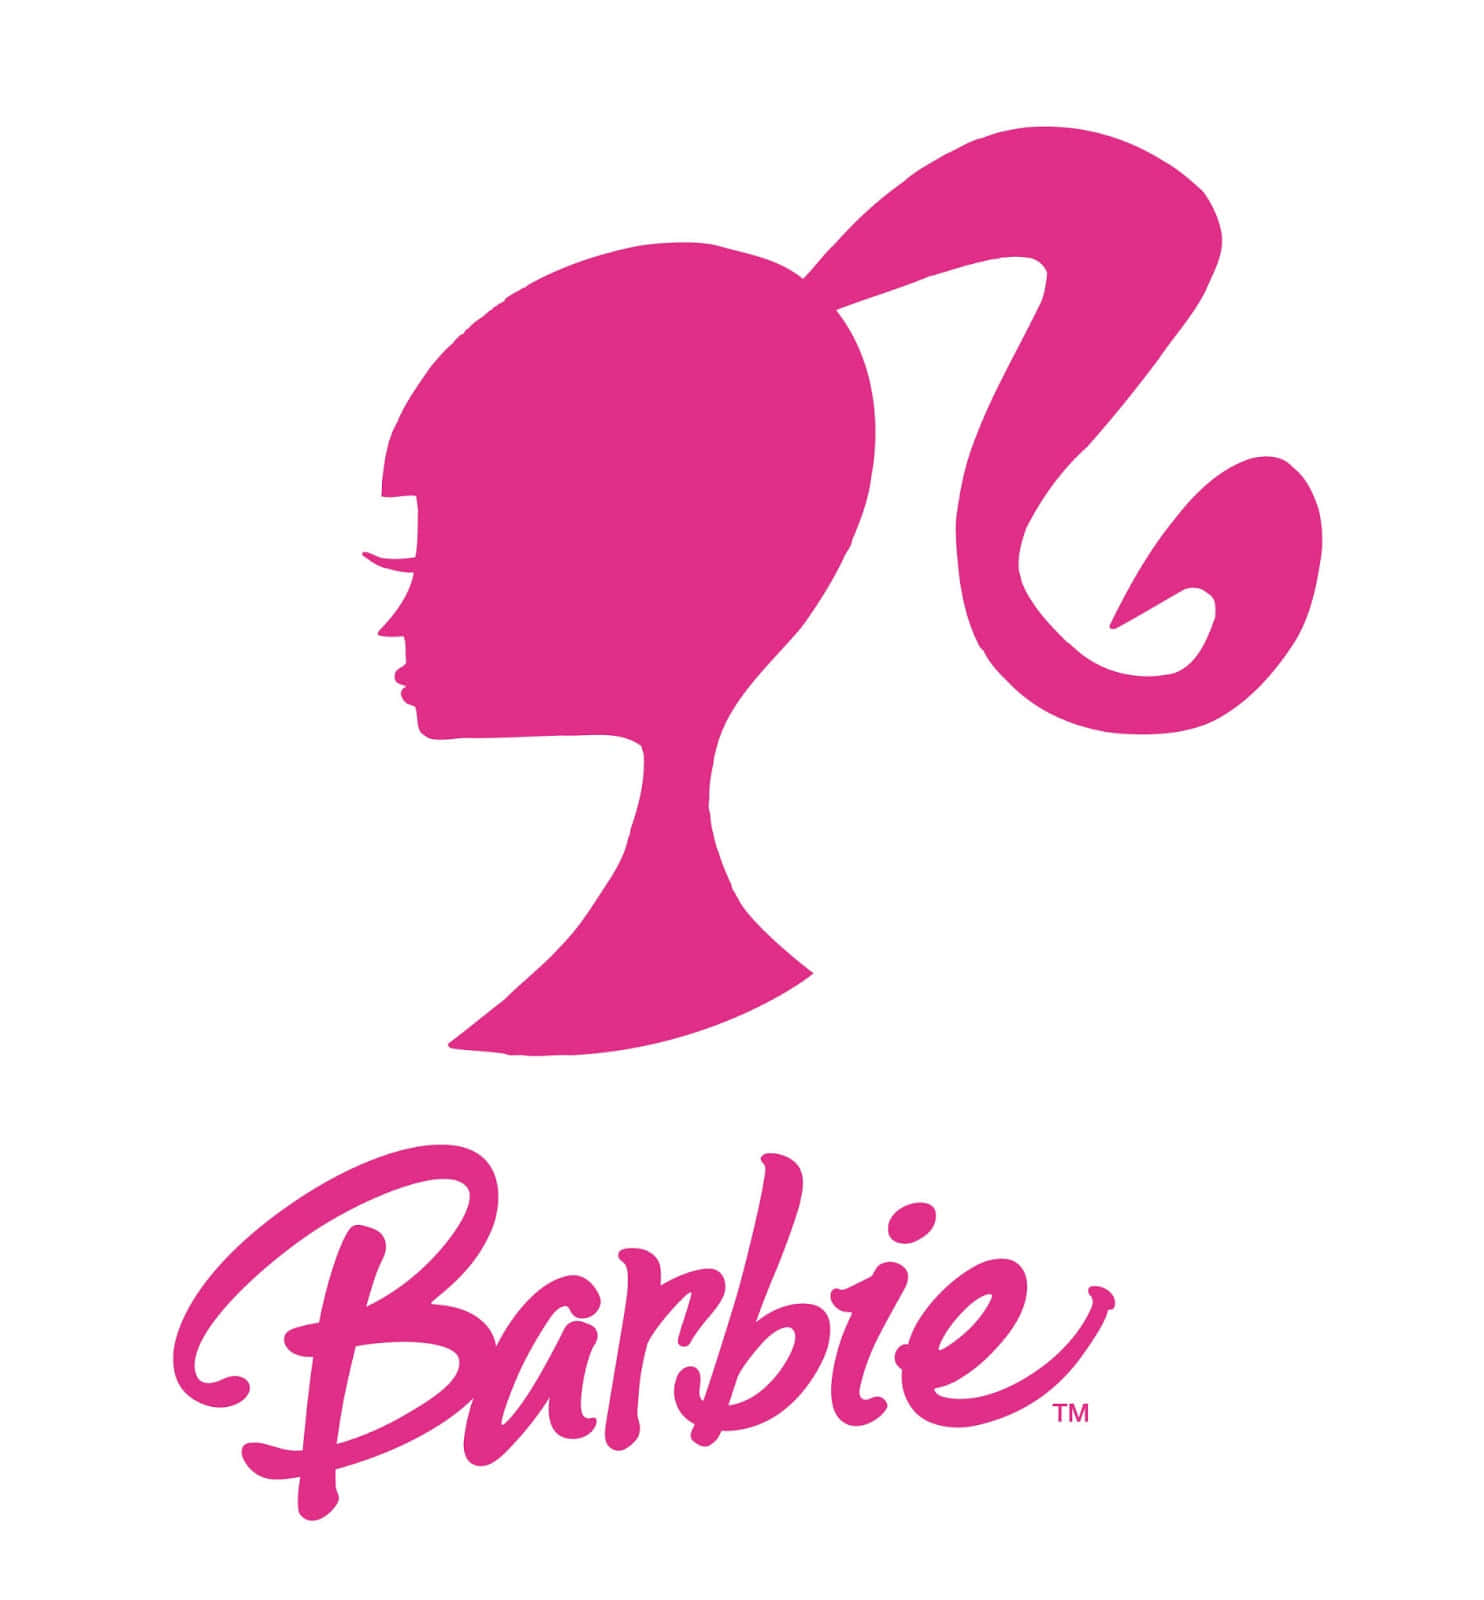 Billeder af Barbie dækker væggene.